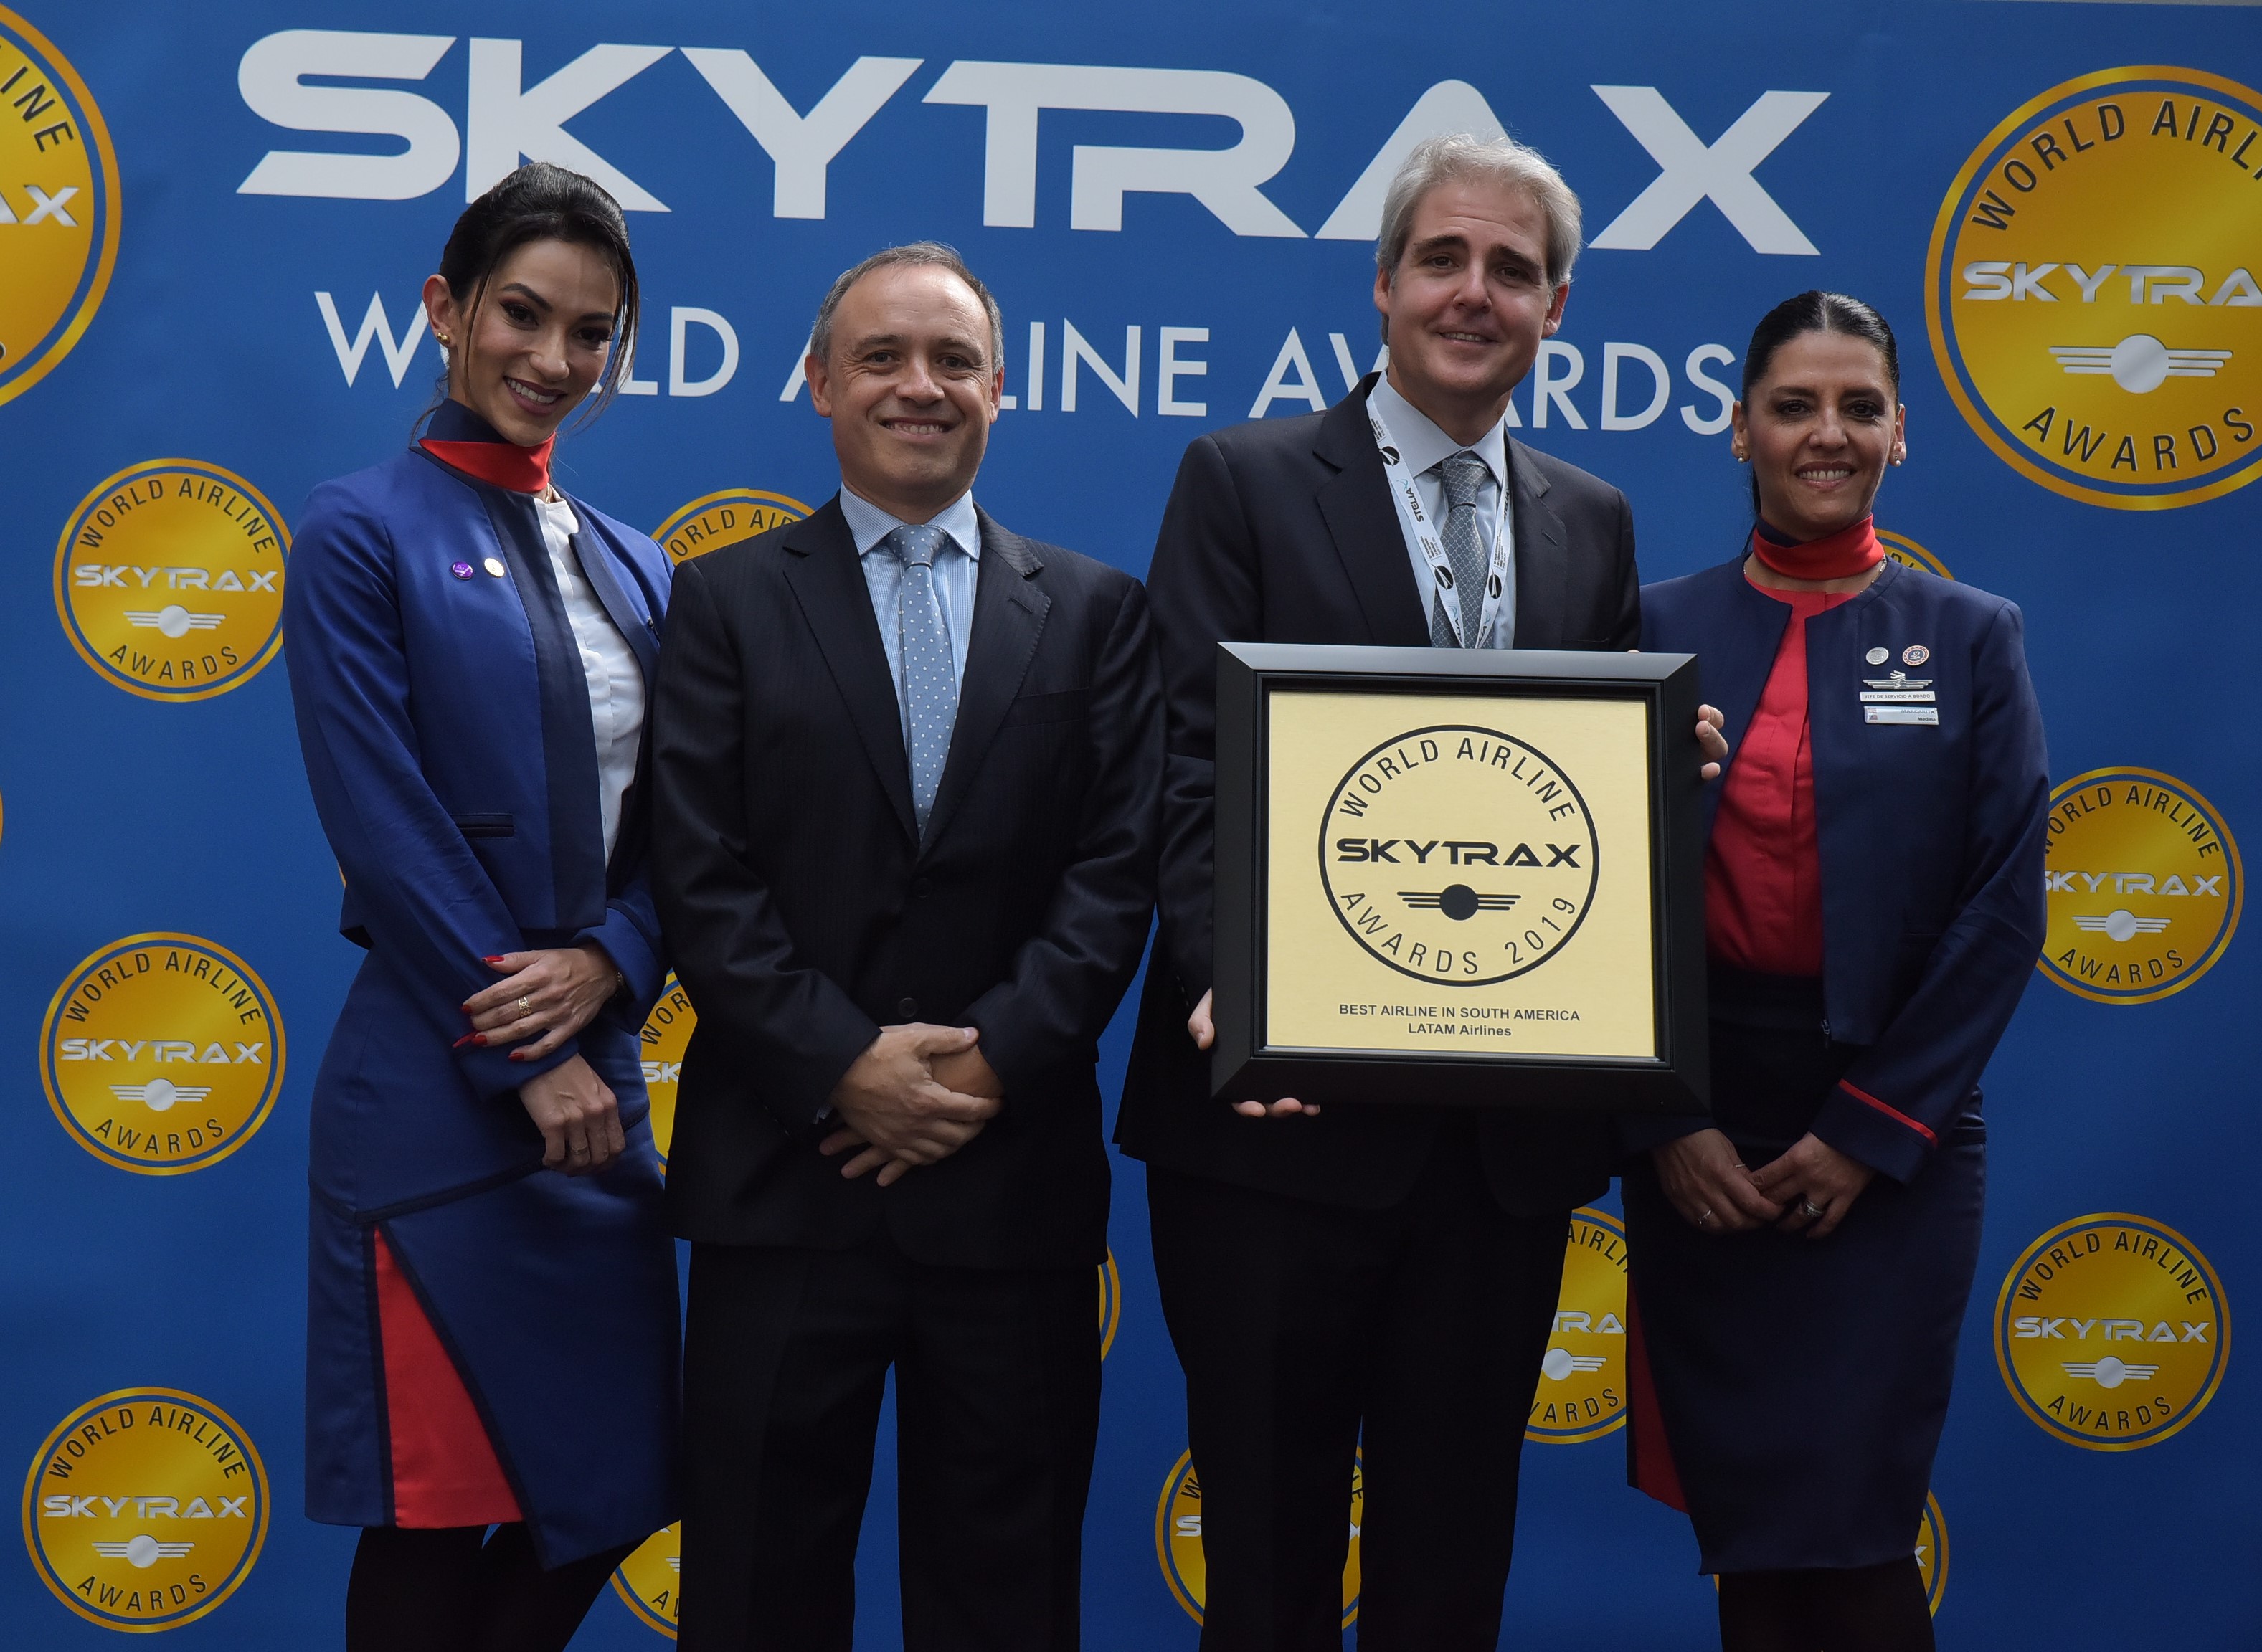 LATAM reconocida como “Mejor Aerolínea de Sudamérica”